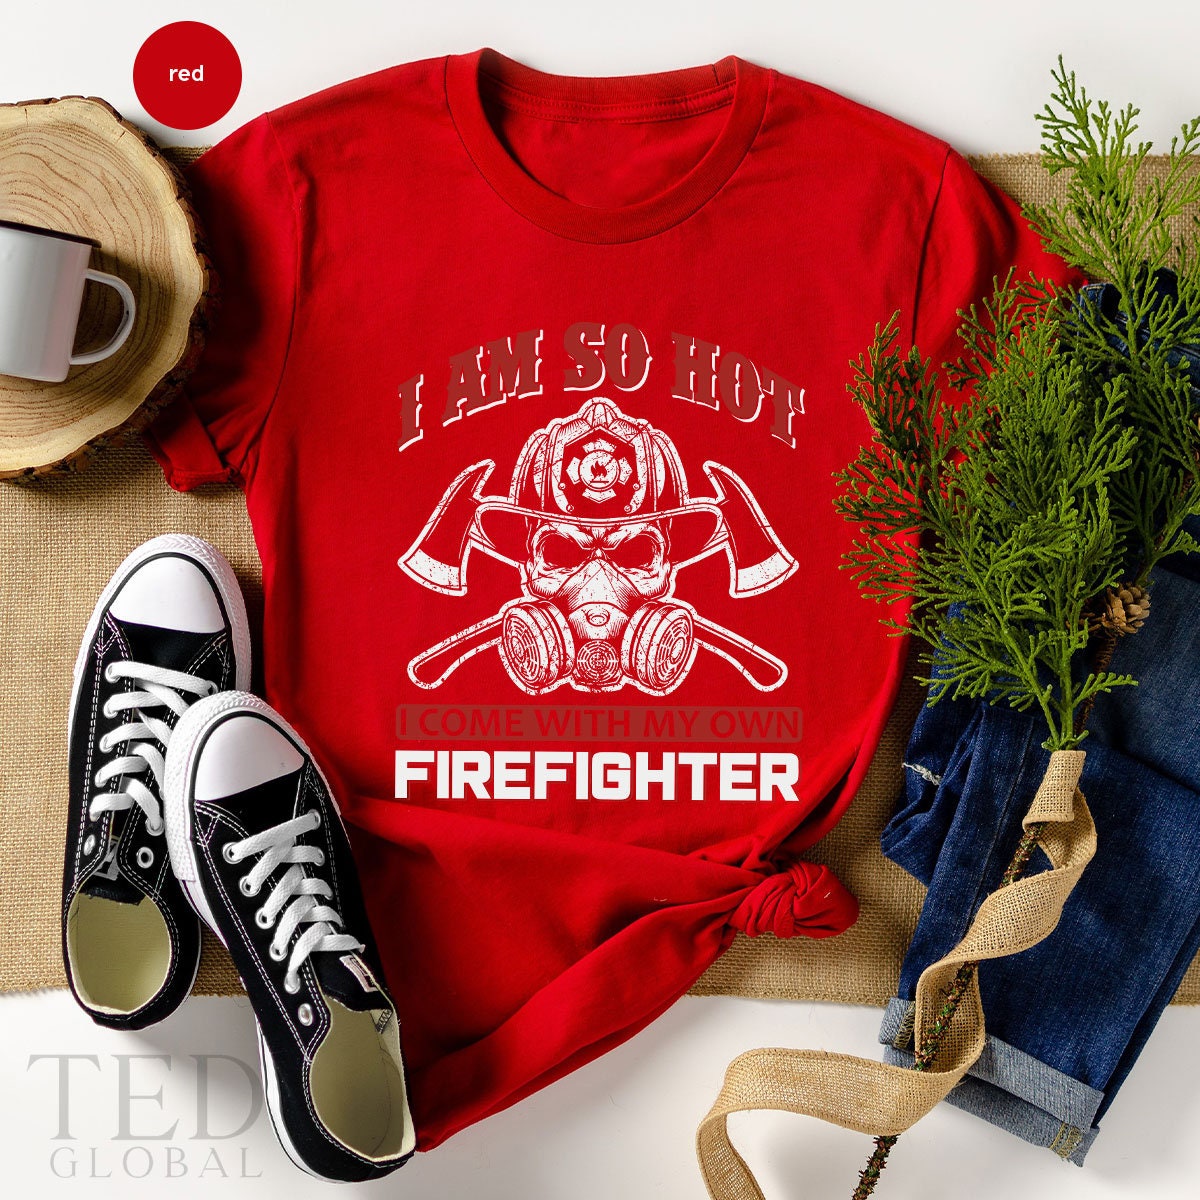 Firefighter Shirt, Fire Department T-Shirt, Fireman T Shirt, Firefighter Shirts, First Responder Tee, Fireman Life T-Shirt, Gift For Fireman - Fastdeliverytees.com